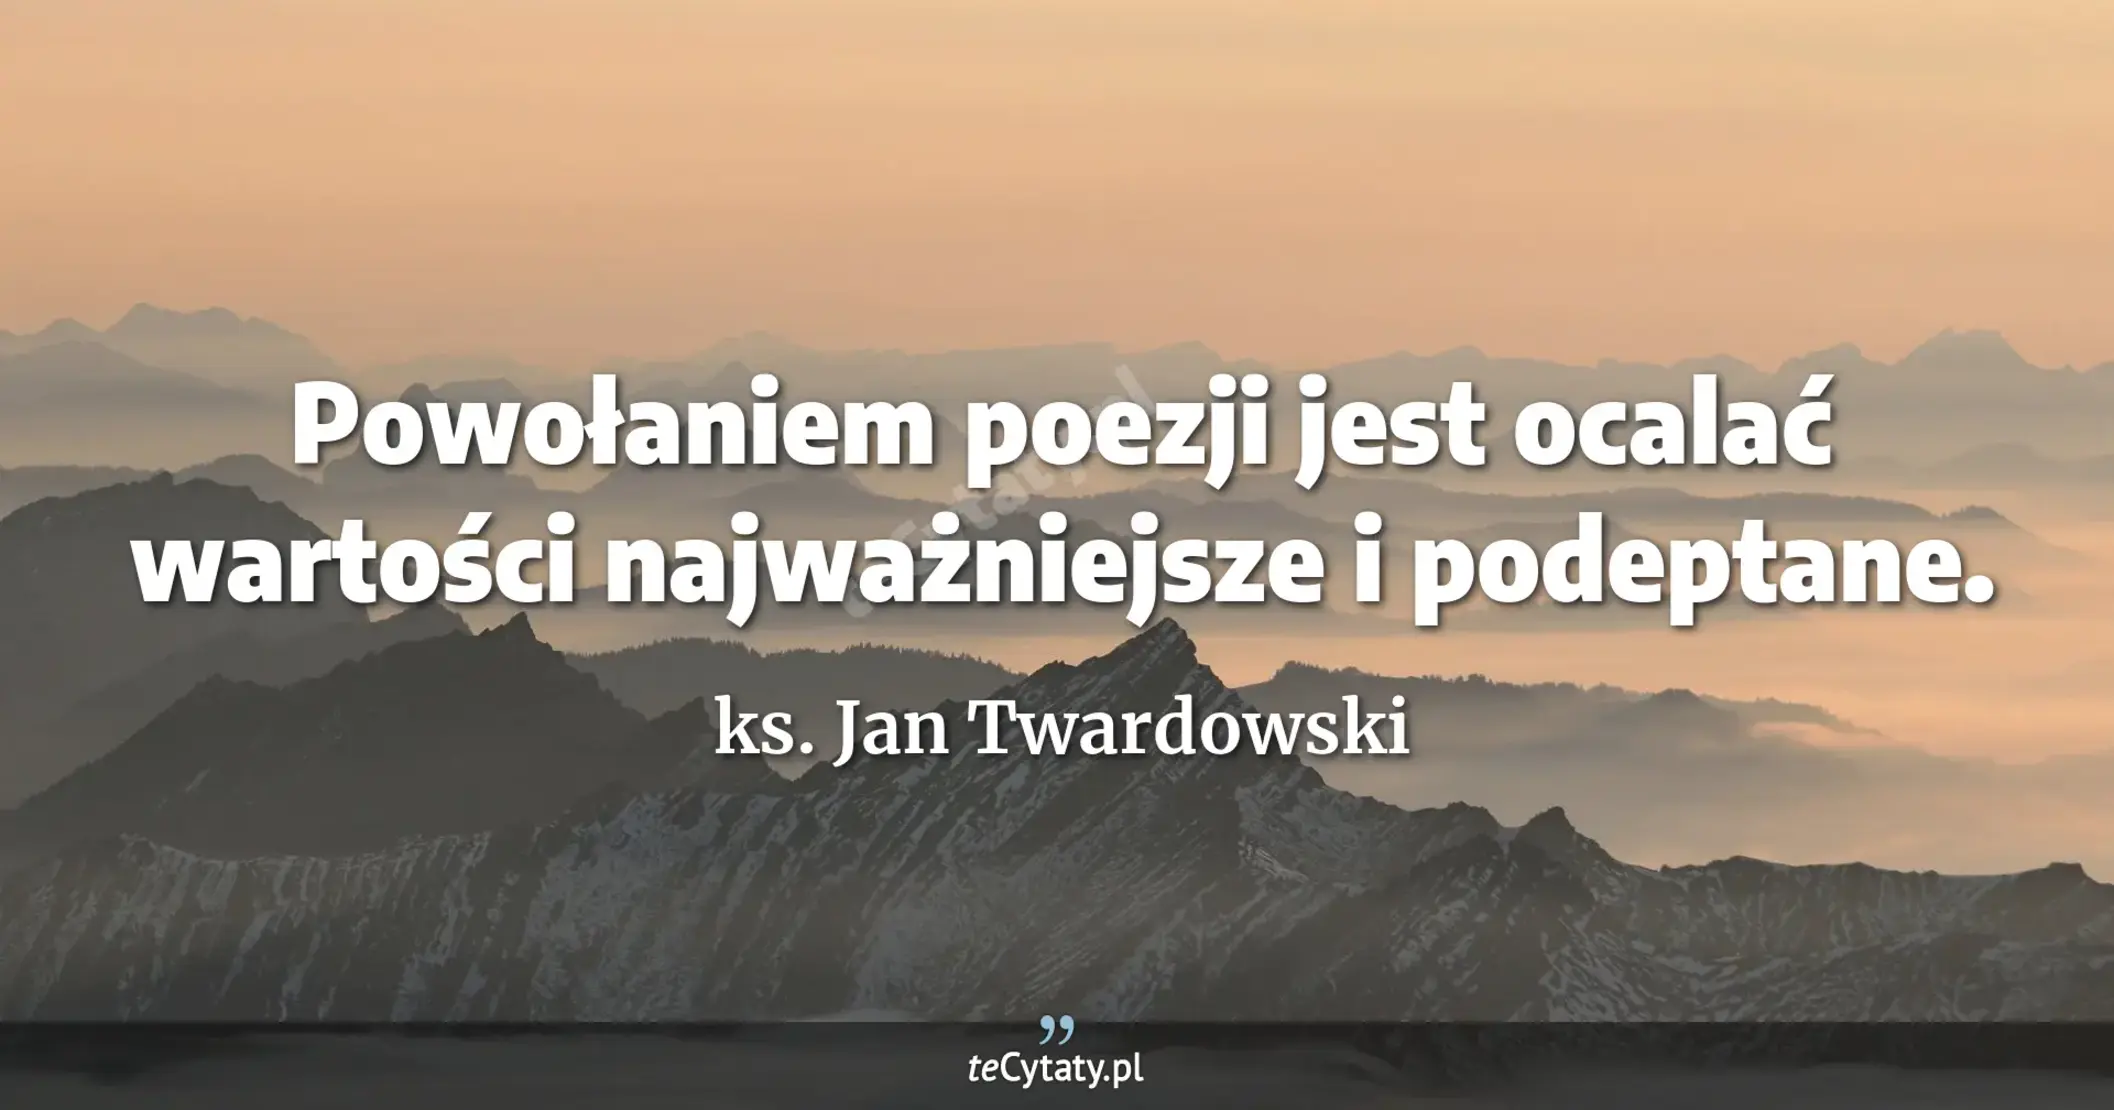 Powołaniem poezji jest ocalać wartości najważniejsze i podeptane. - ks. Jan Twardowski